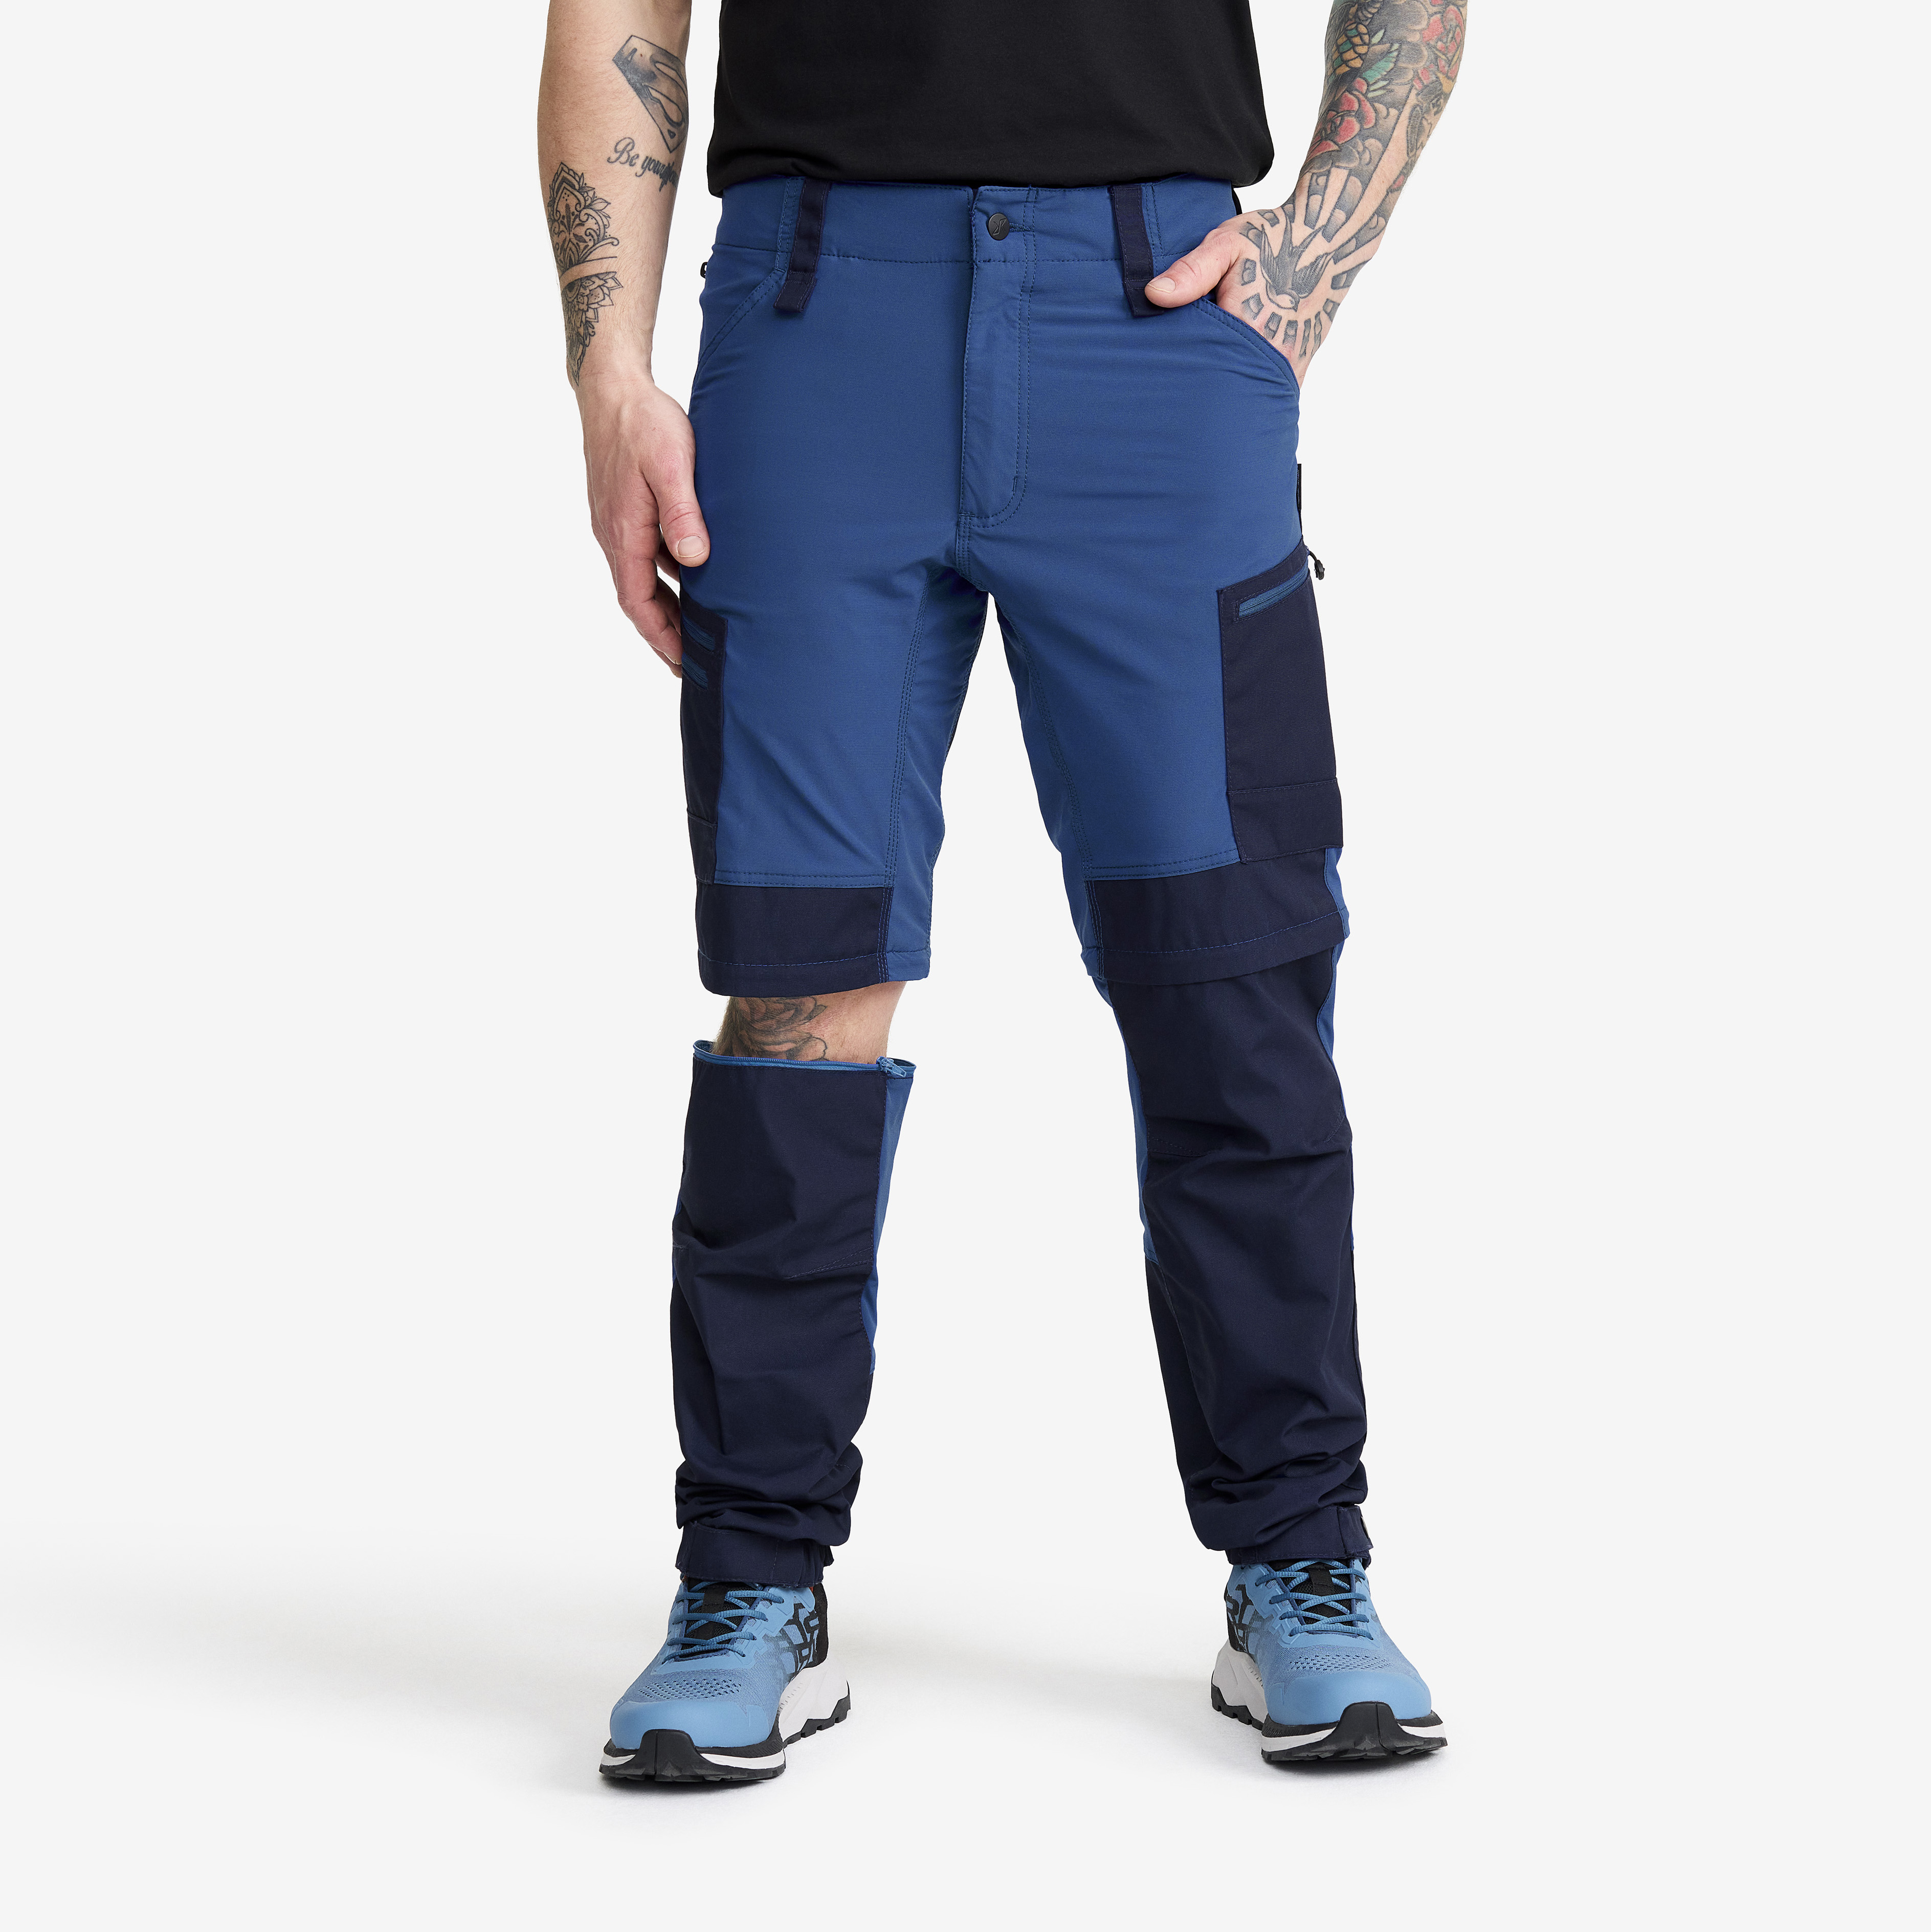 RVRC GP Pro Zip-off turistické kalhoty pro muže v tmavě modré barvě